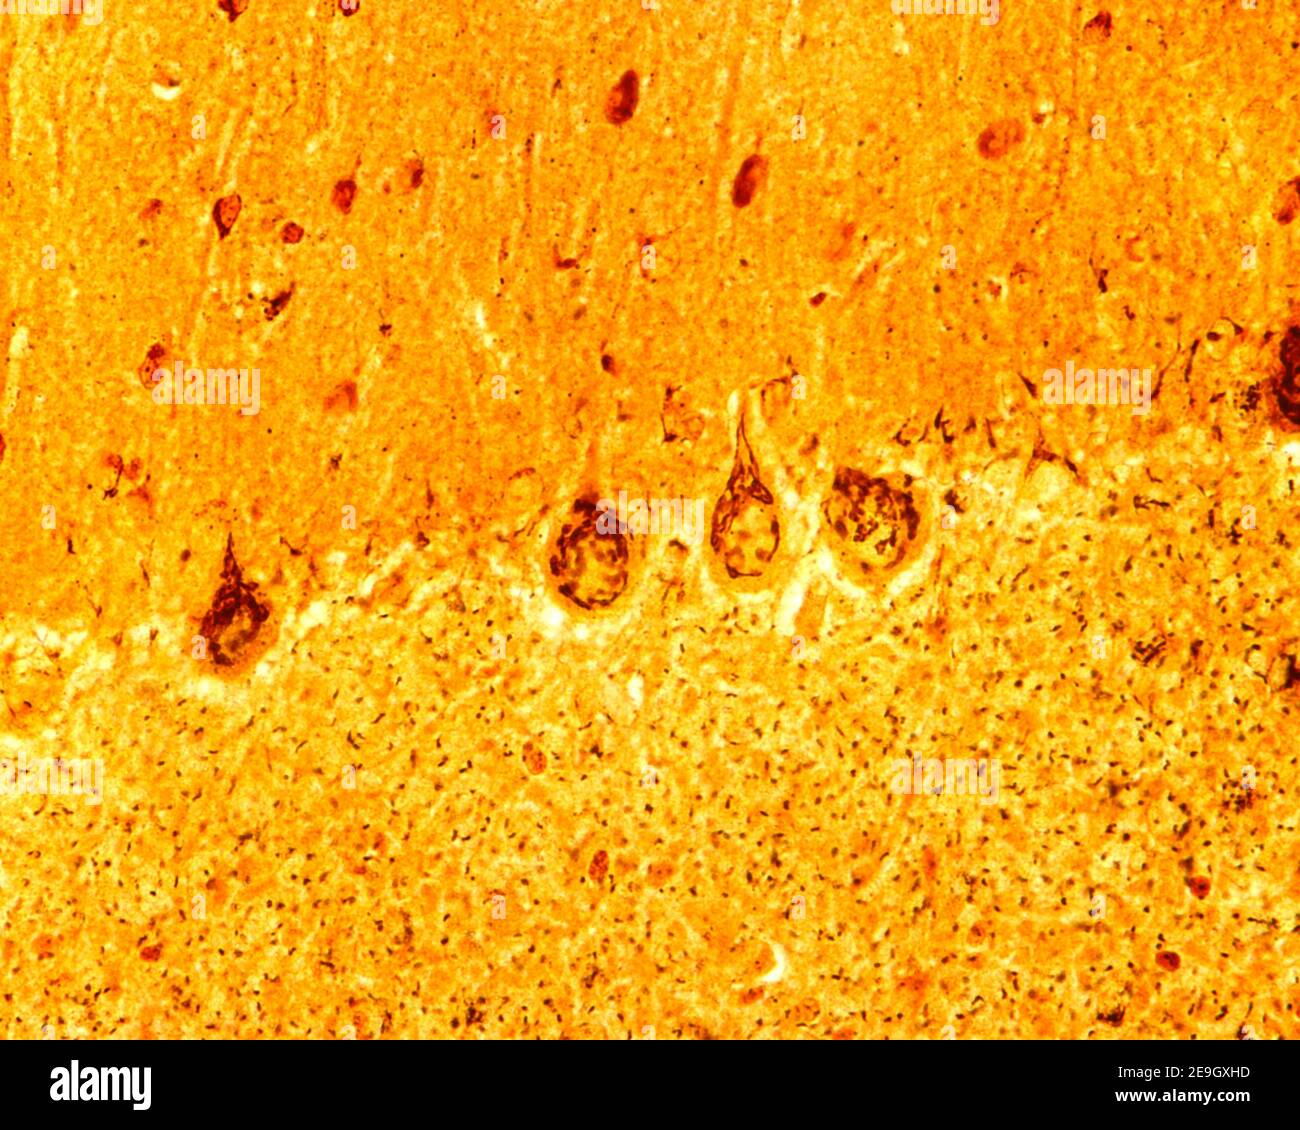 Cortex cérébelleux. Méthode de l'argent pour l'appareil de Golgi. Dans les neurones Purkinje, les dictyosomes entourent le noyau et entrent dans le tronc dendritique apical Banque D'Images